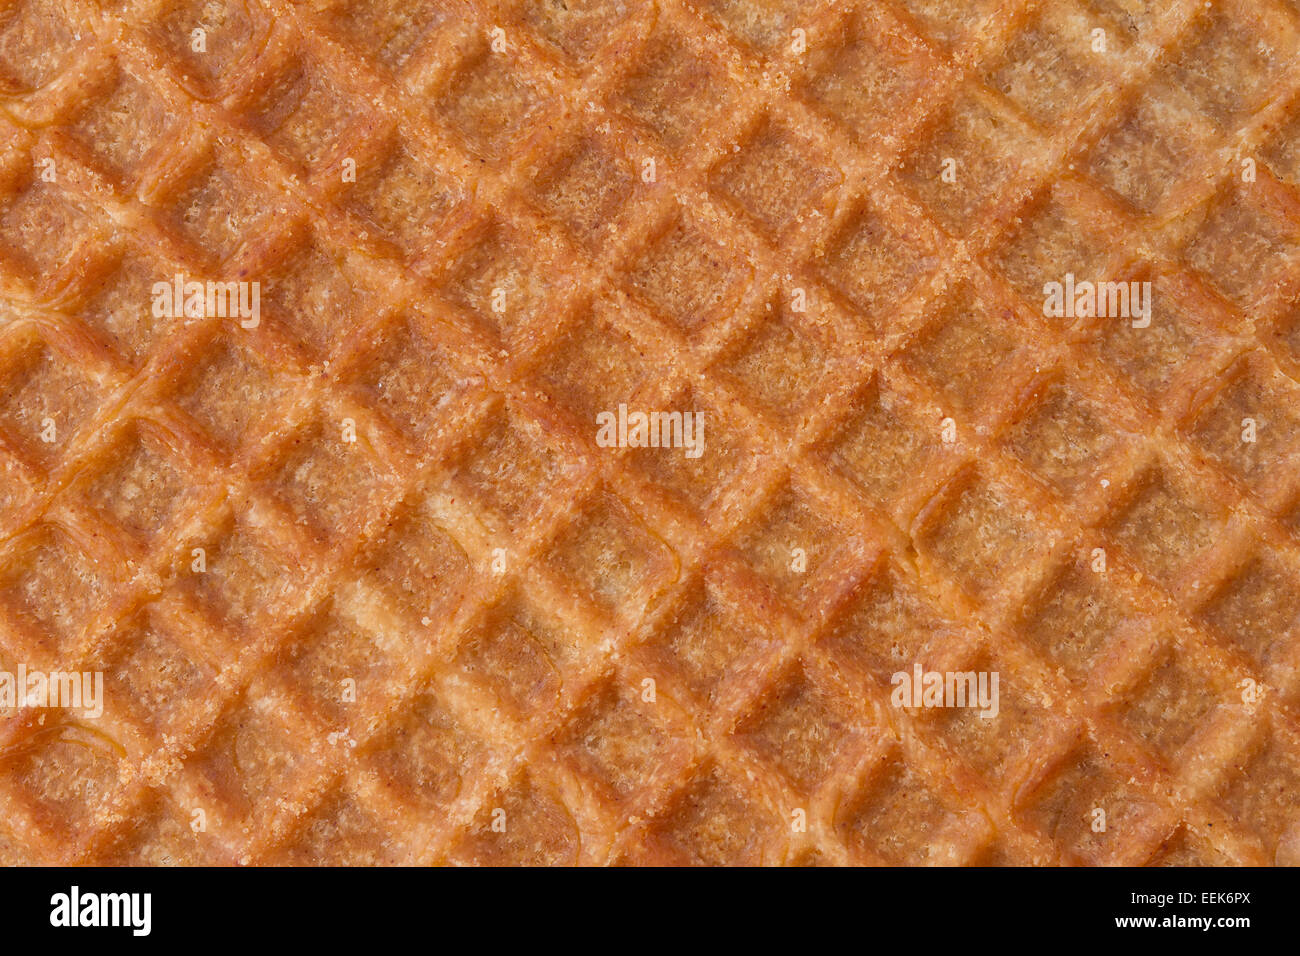 Close up image of sweet waffle Stock Photo